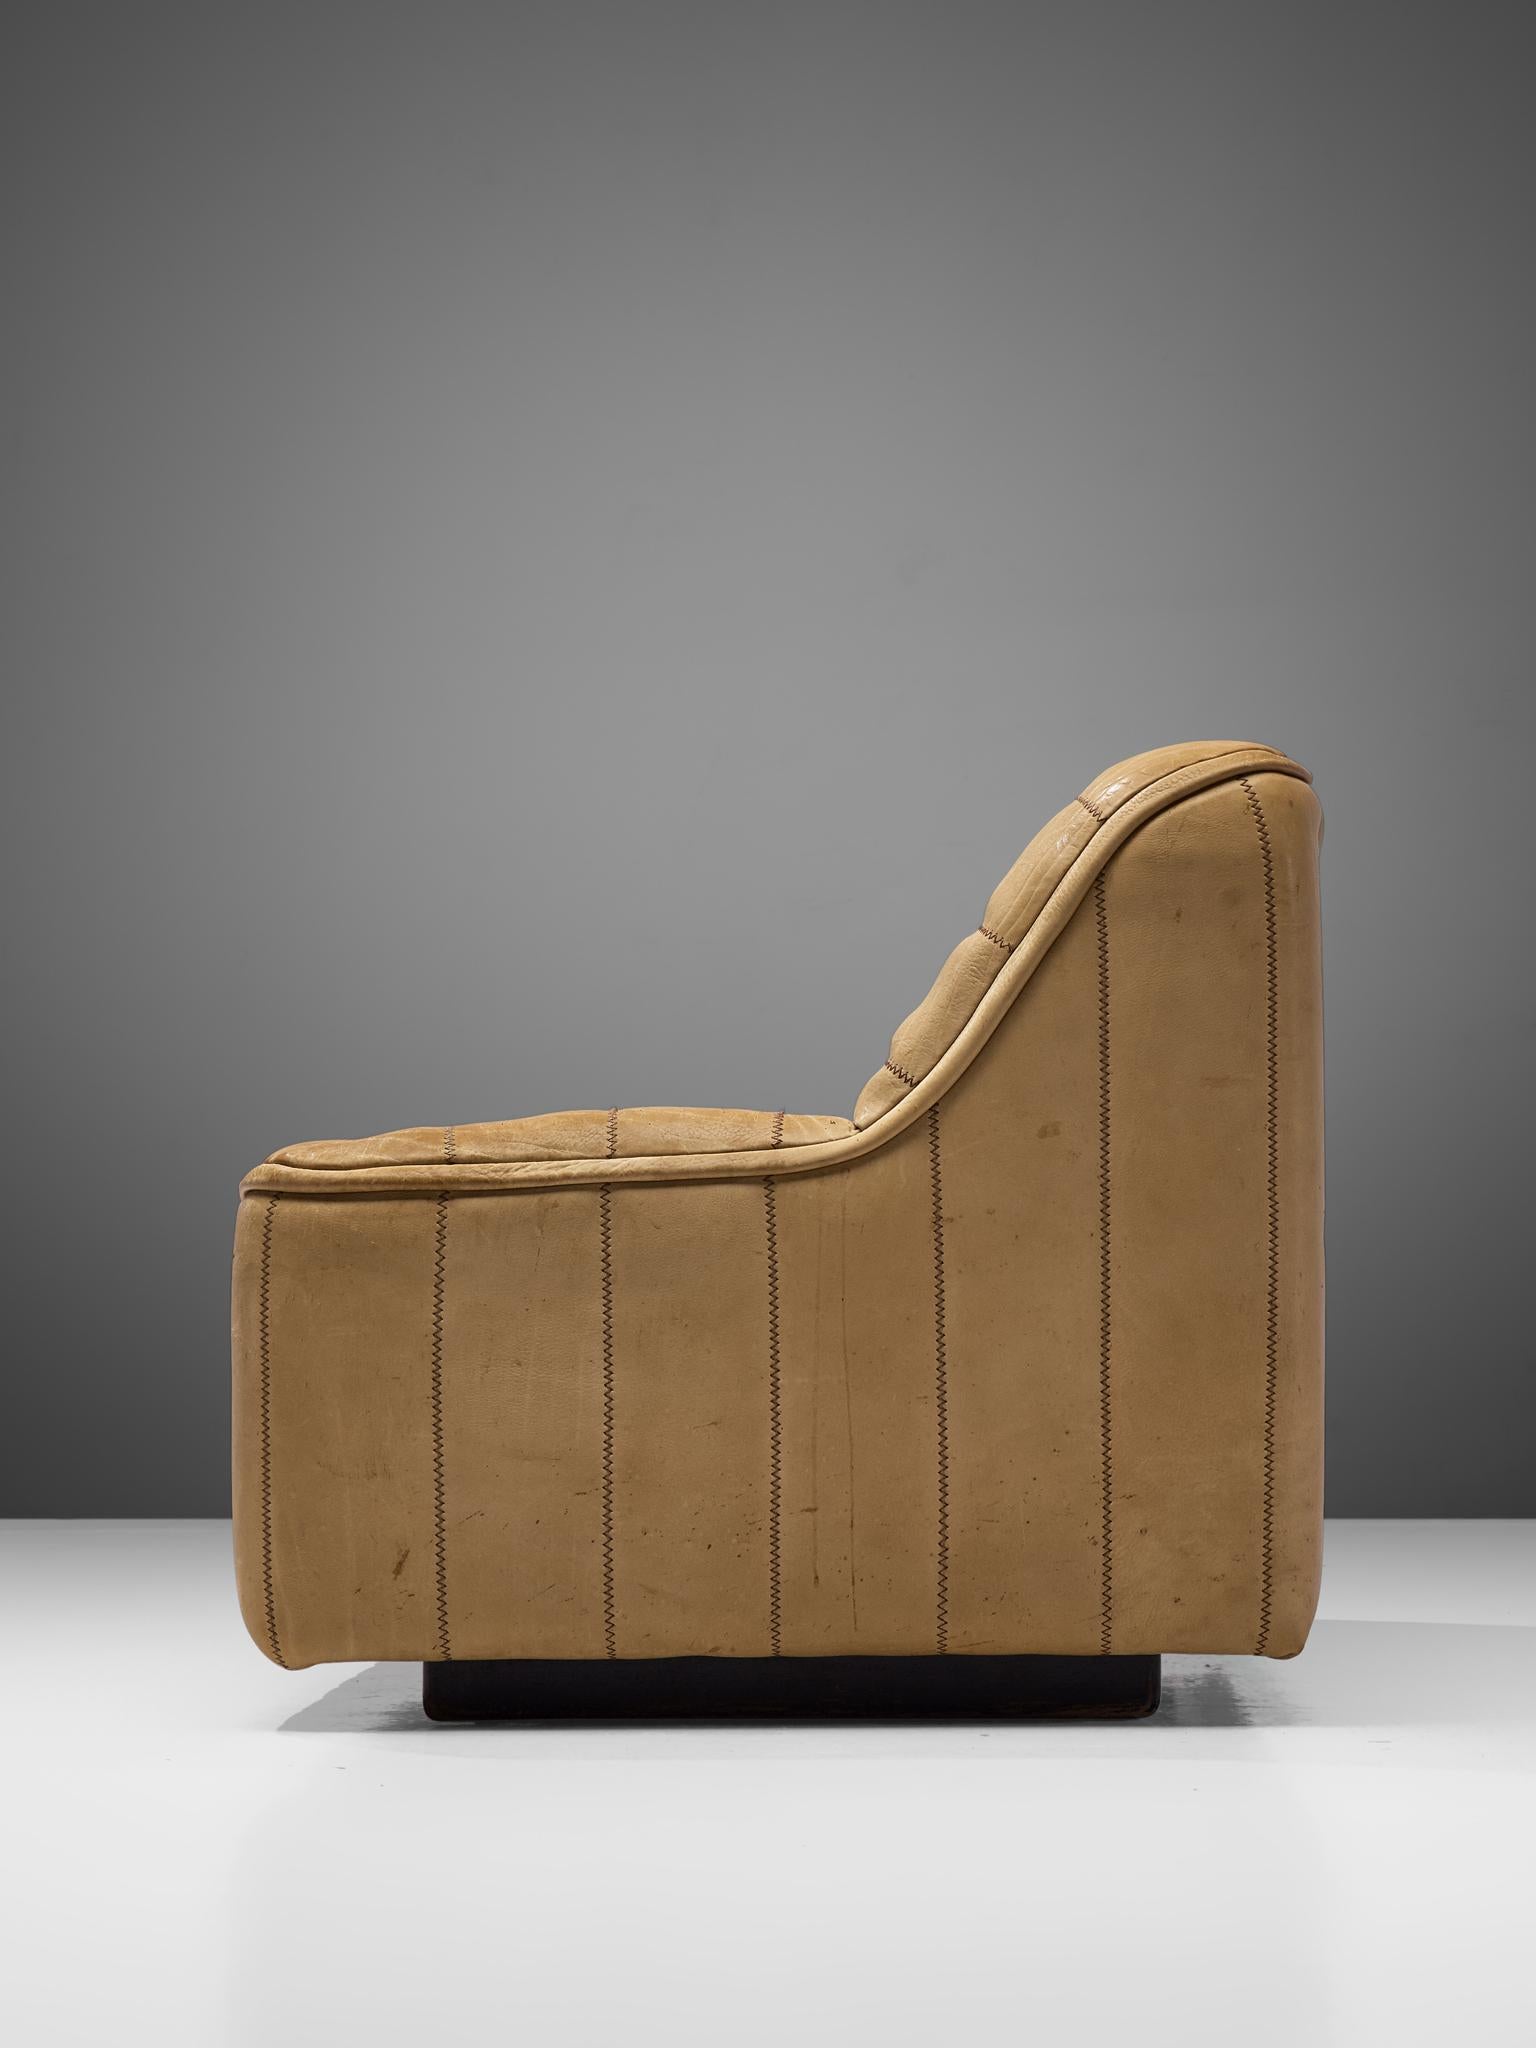 Swiss De Sede 'DS-84' Sofa in Buffalo Leather